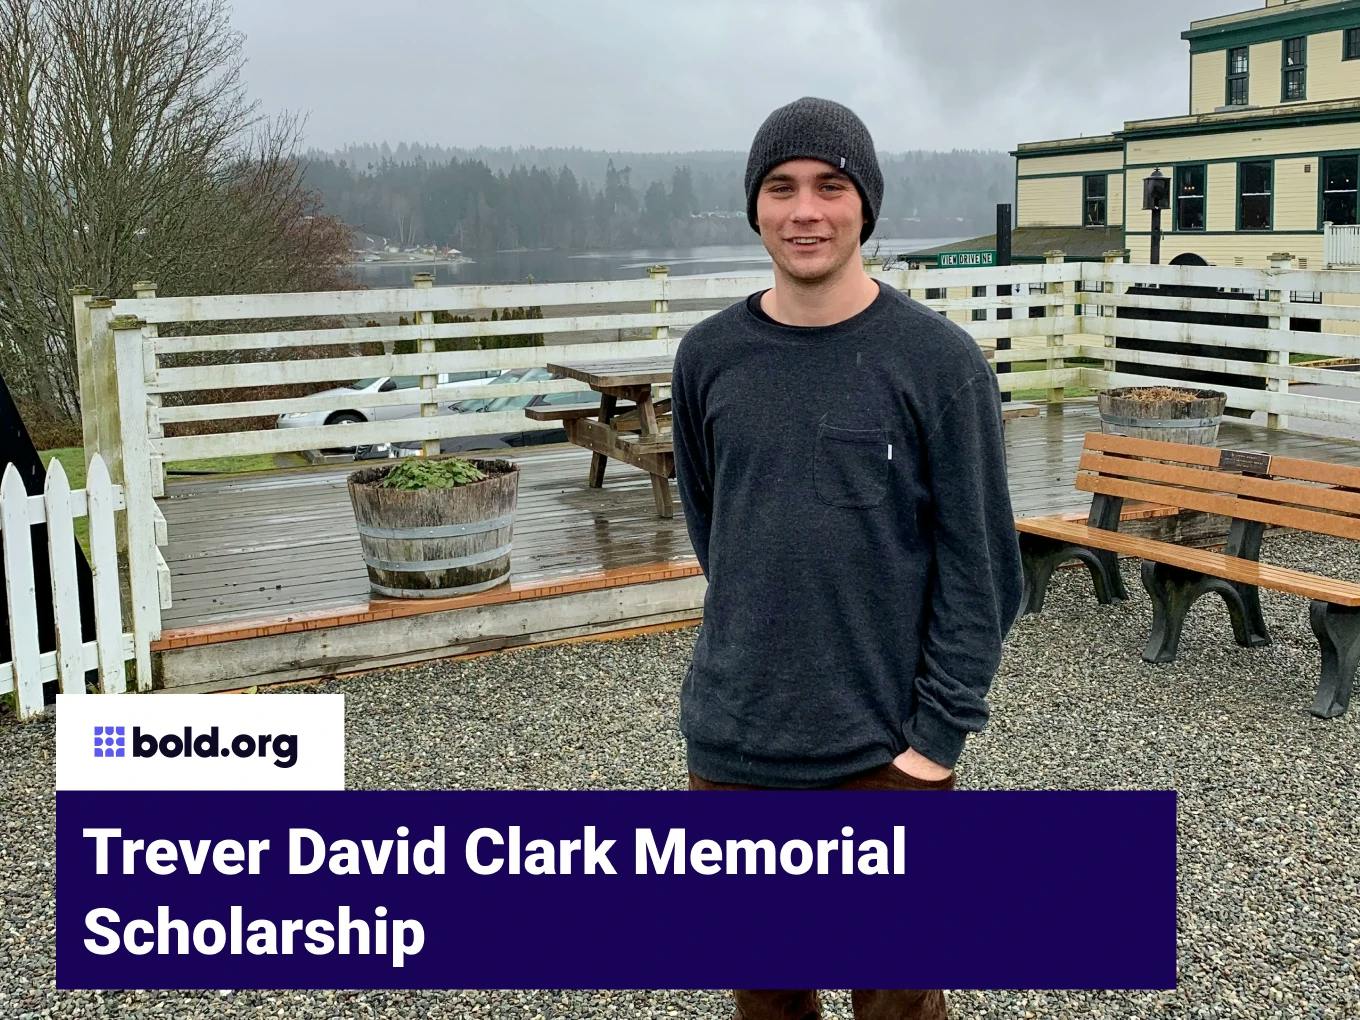 Trever David Clark Memorial Scholarship